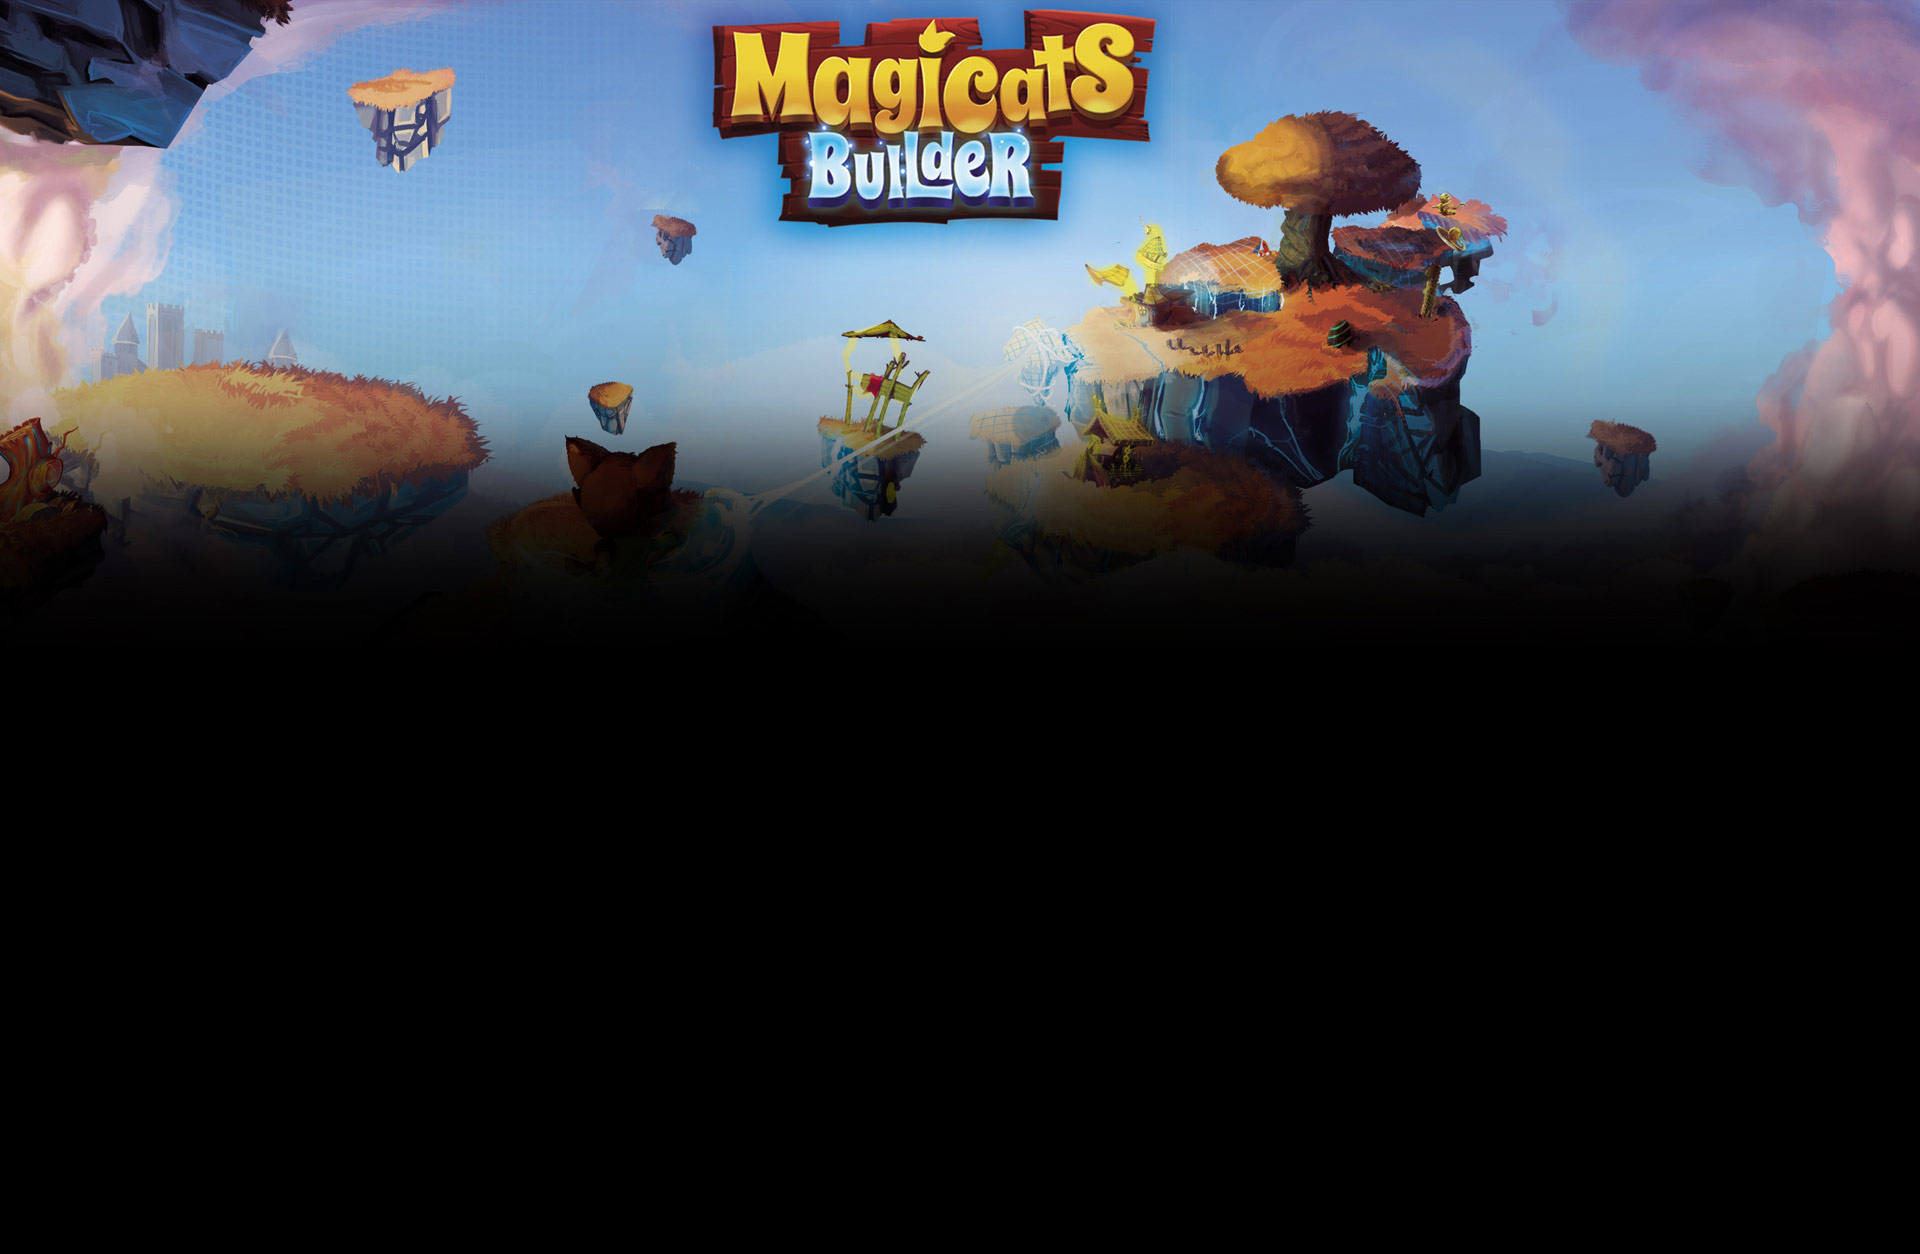 MagiCats Builder Infinite Pack